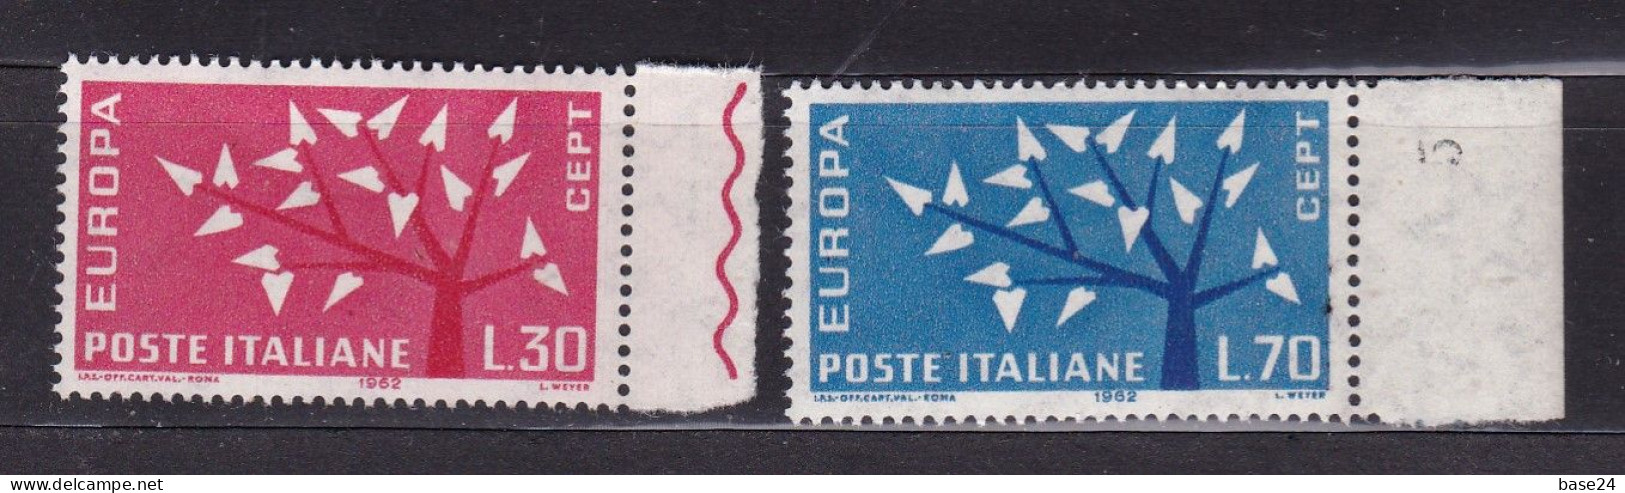 1962 Italia Italy Repubblica EUROPA CEPT EUROPE Serie Di 2 Valori MNH** ALBERO TREE - 1962